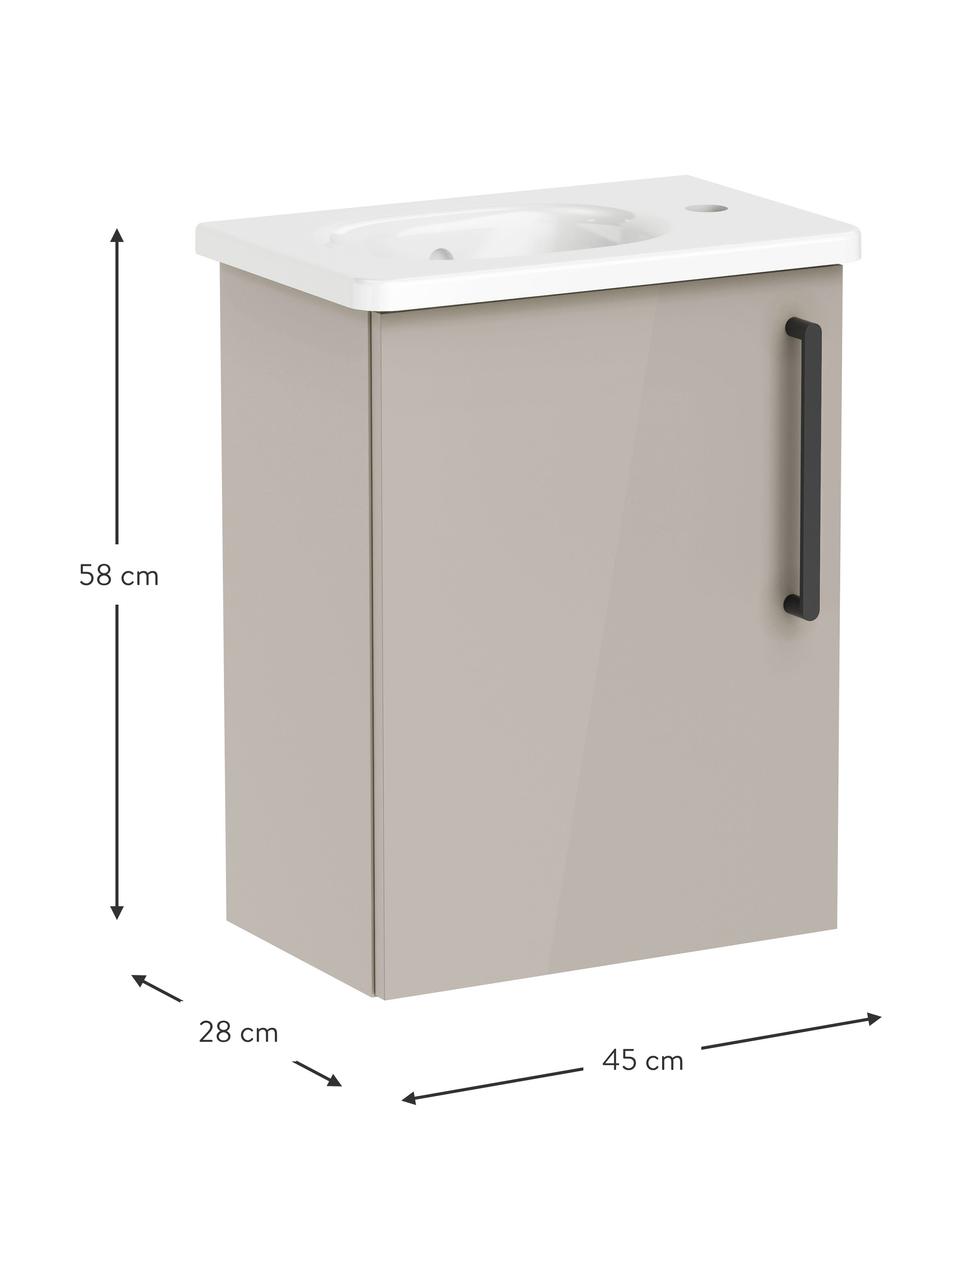 Waschtisch mit Unterschrank Orna, B 45 cm, Griff: Aluminium, beschichtet, Beige, B 45 x H 58 cm